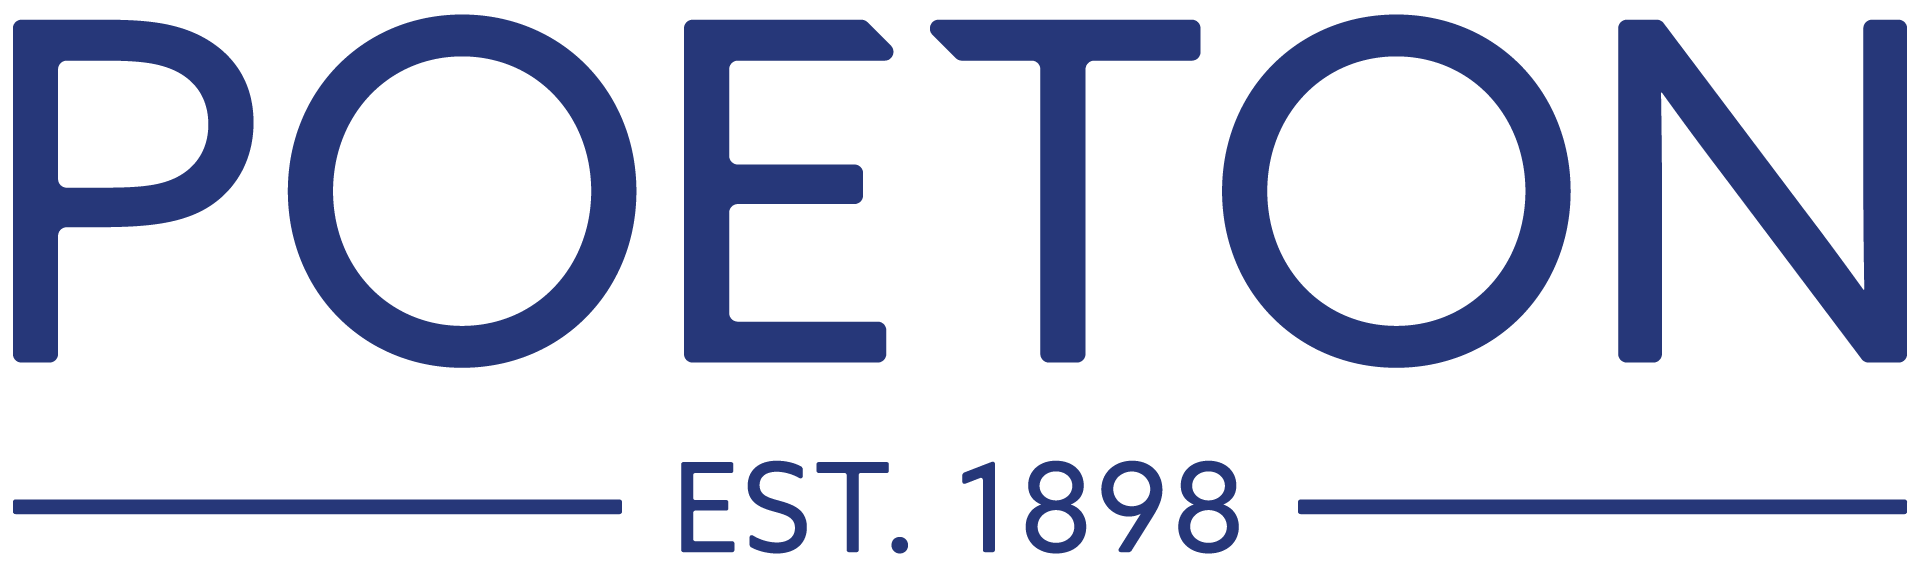 Poeton Logo